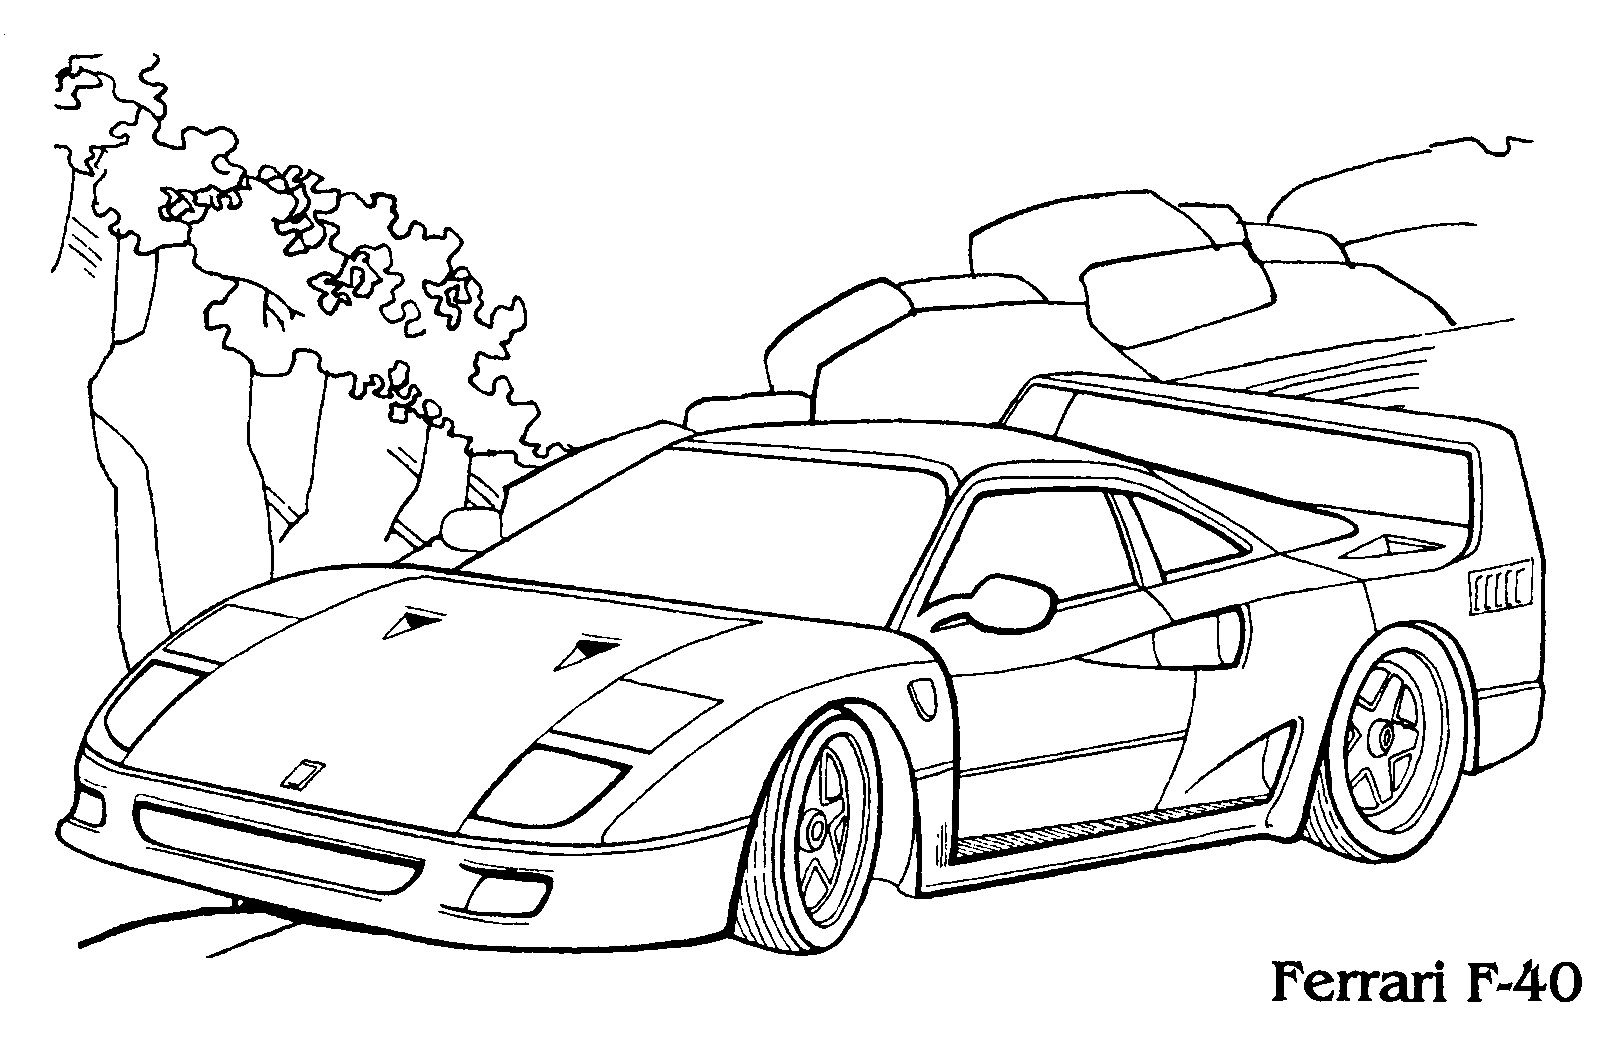 Ferrari F-40